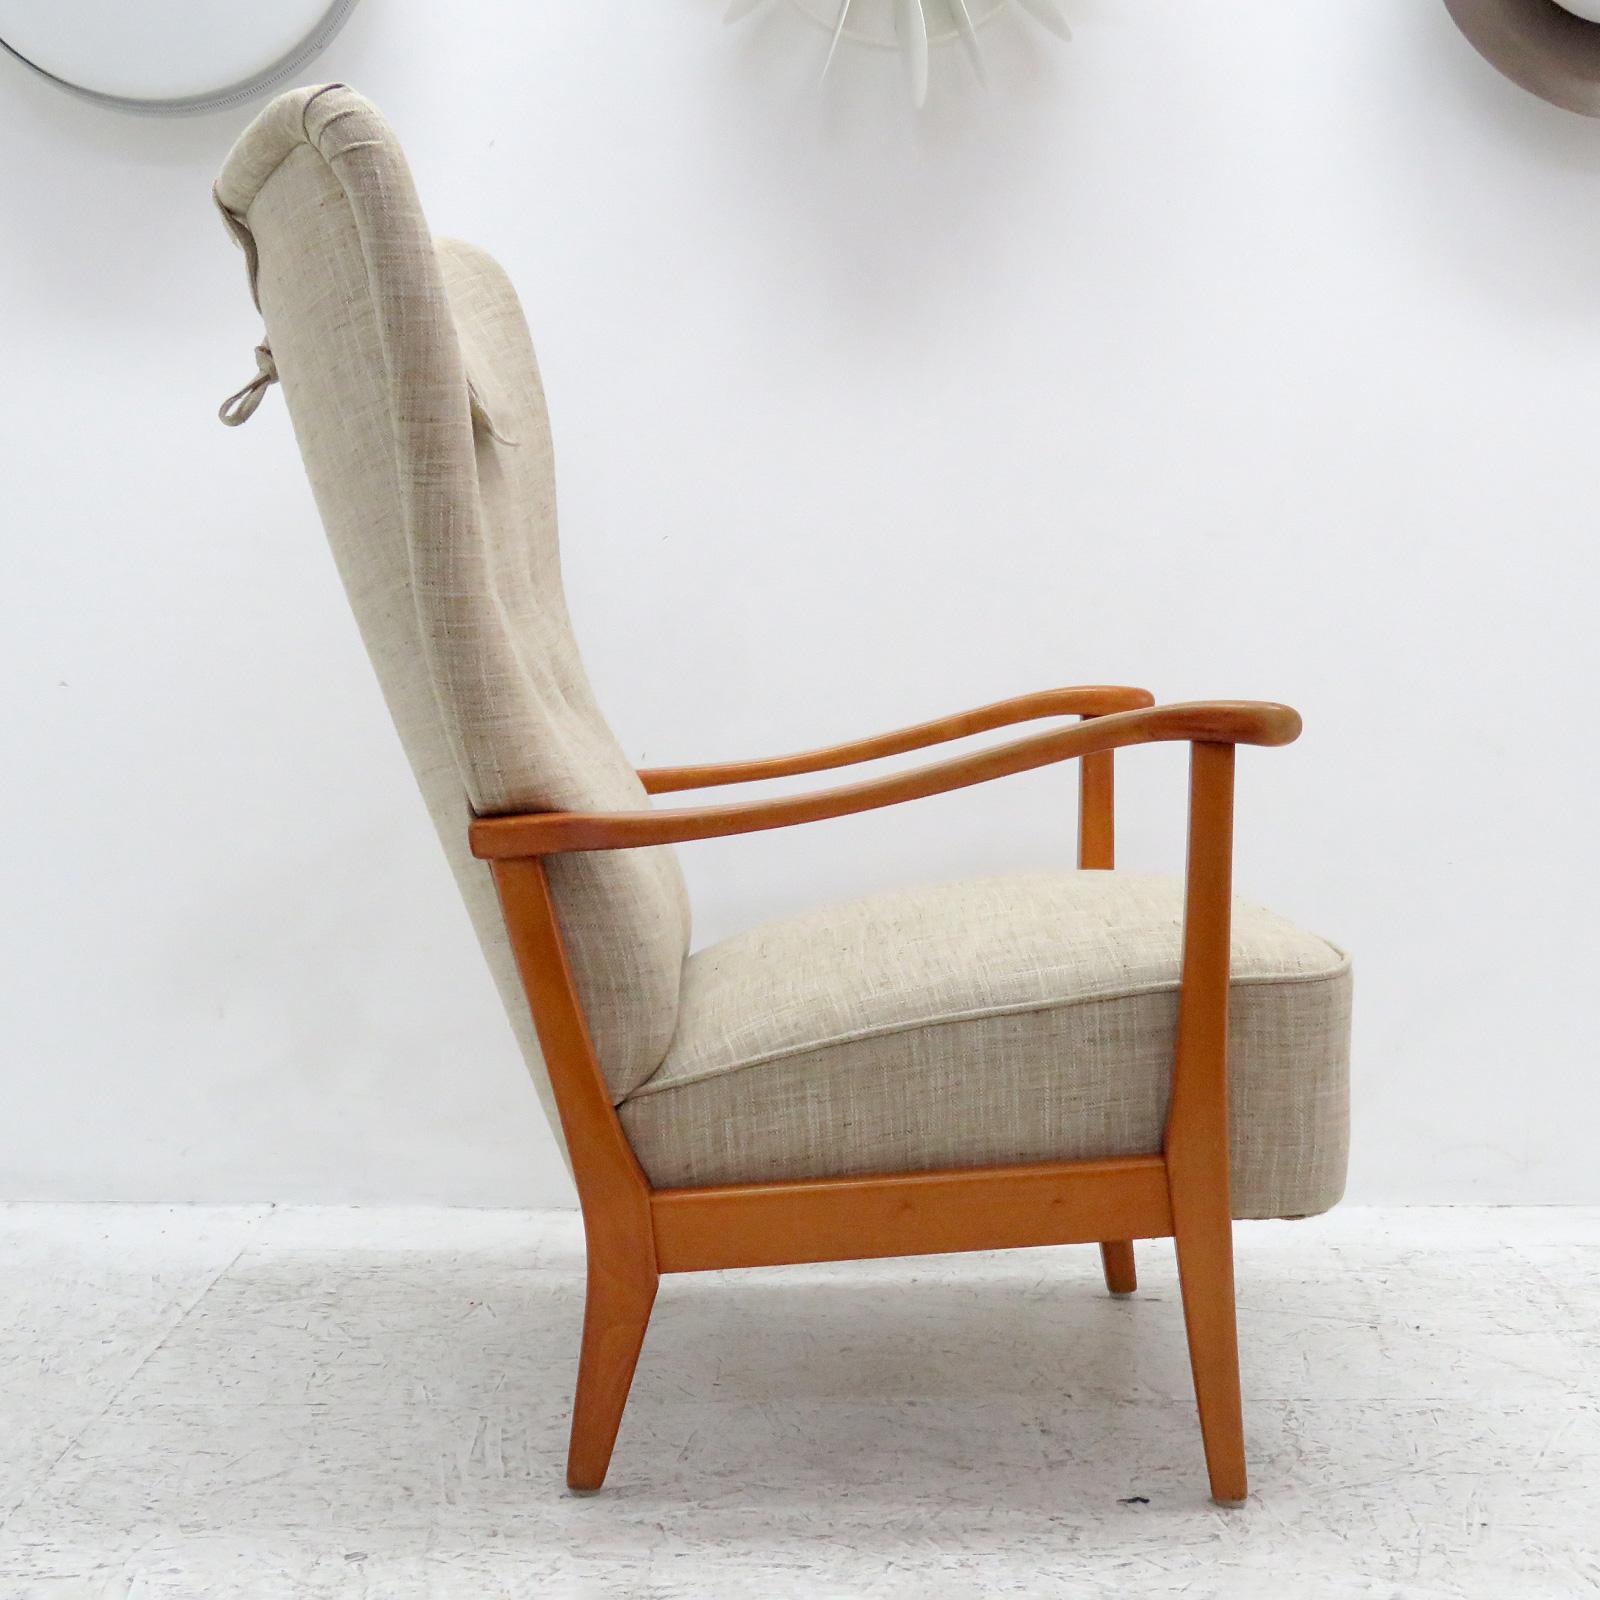 Beech Danish Modern High Back Chair by Dux, 1940